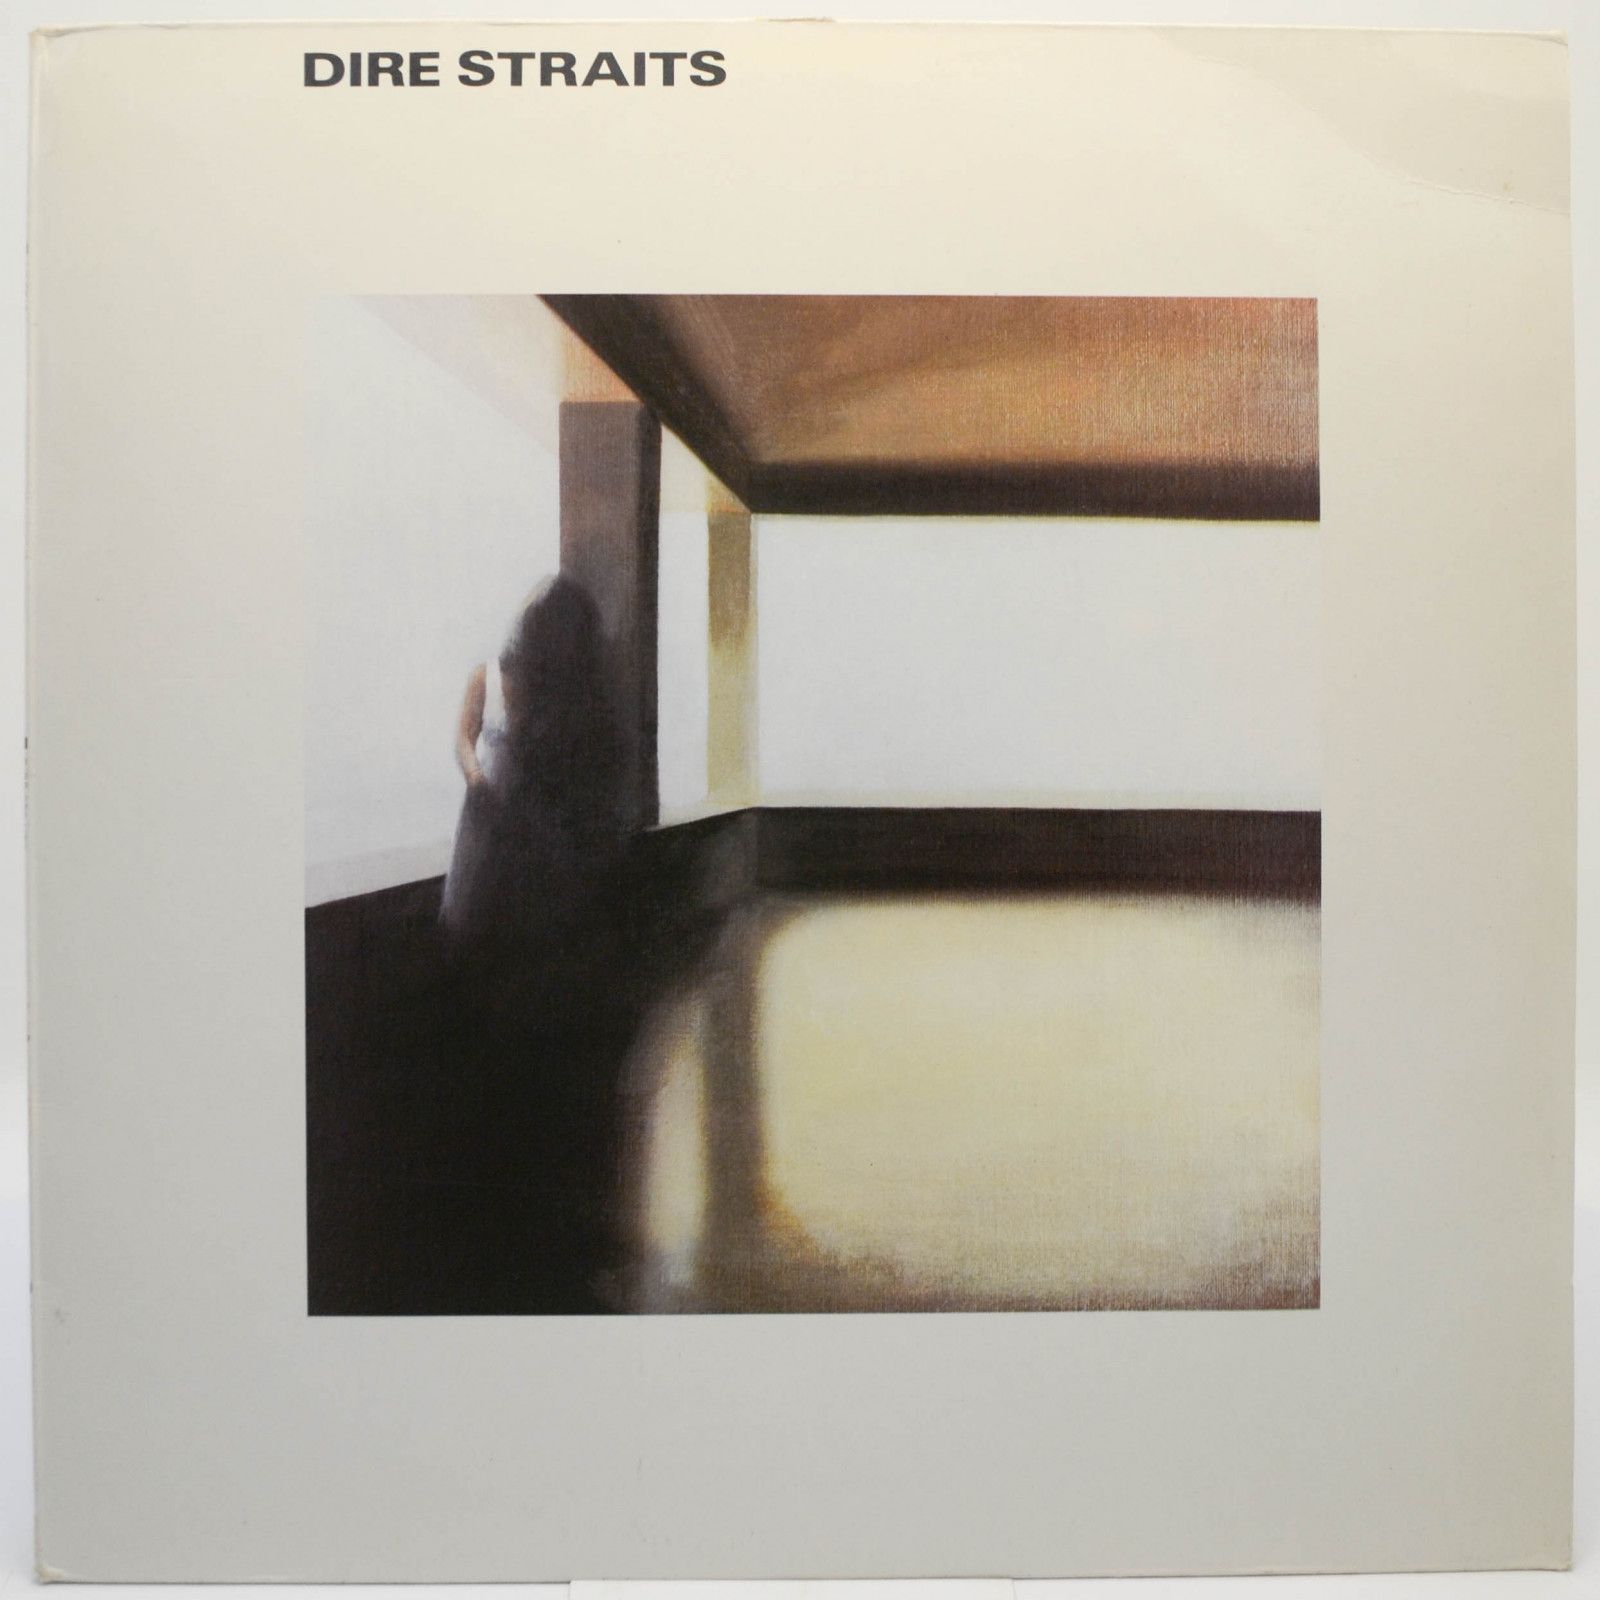 Dire Straits — Dire Straits, 1978